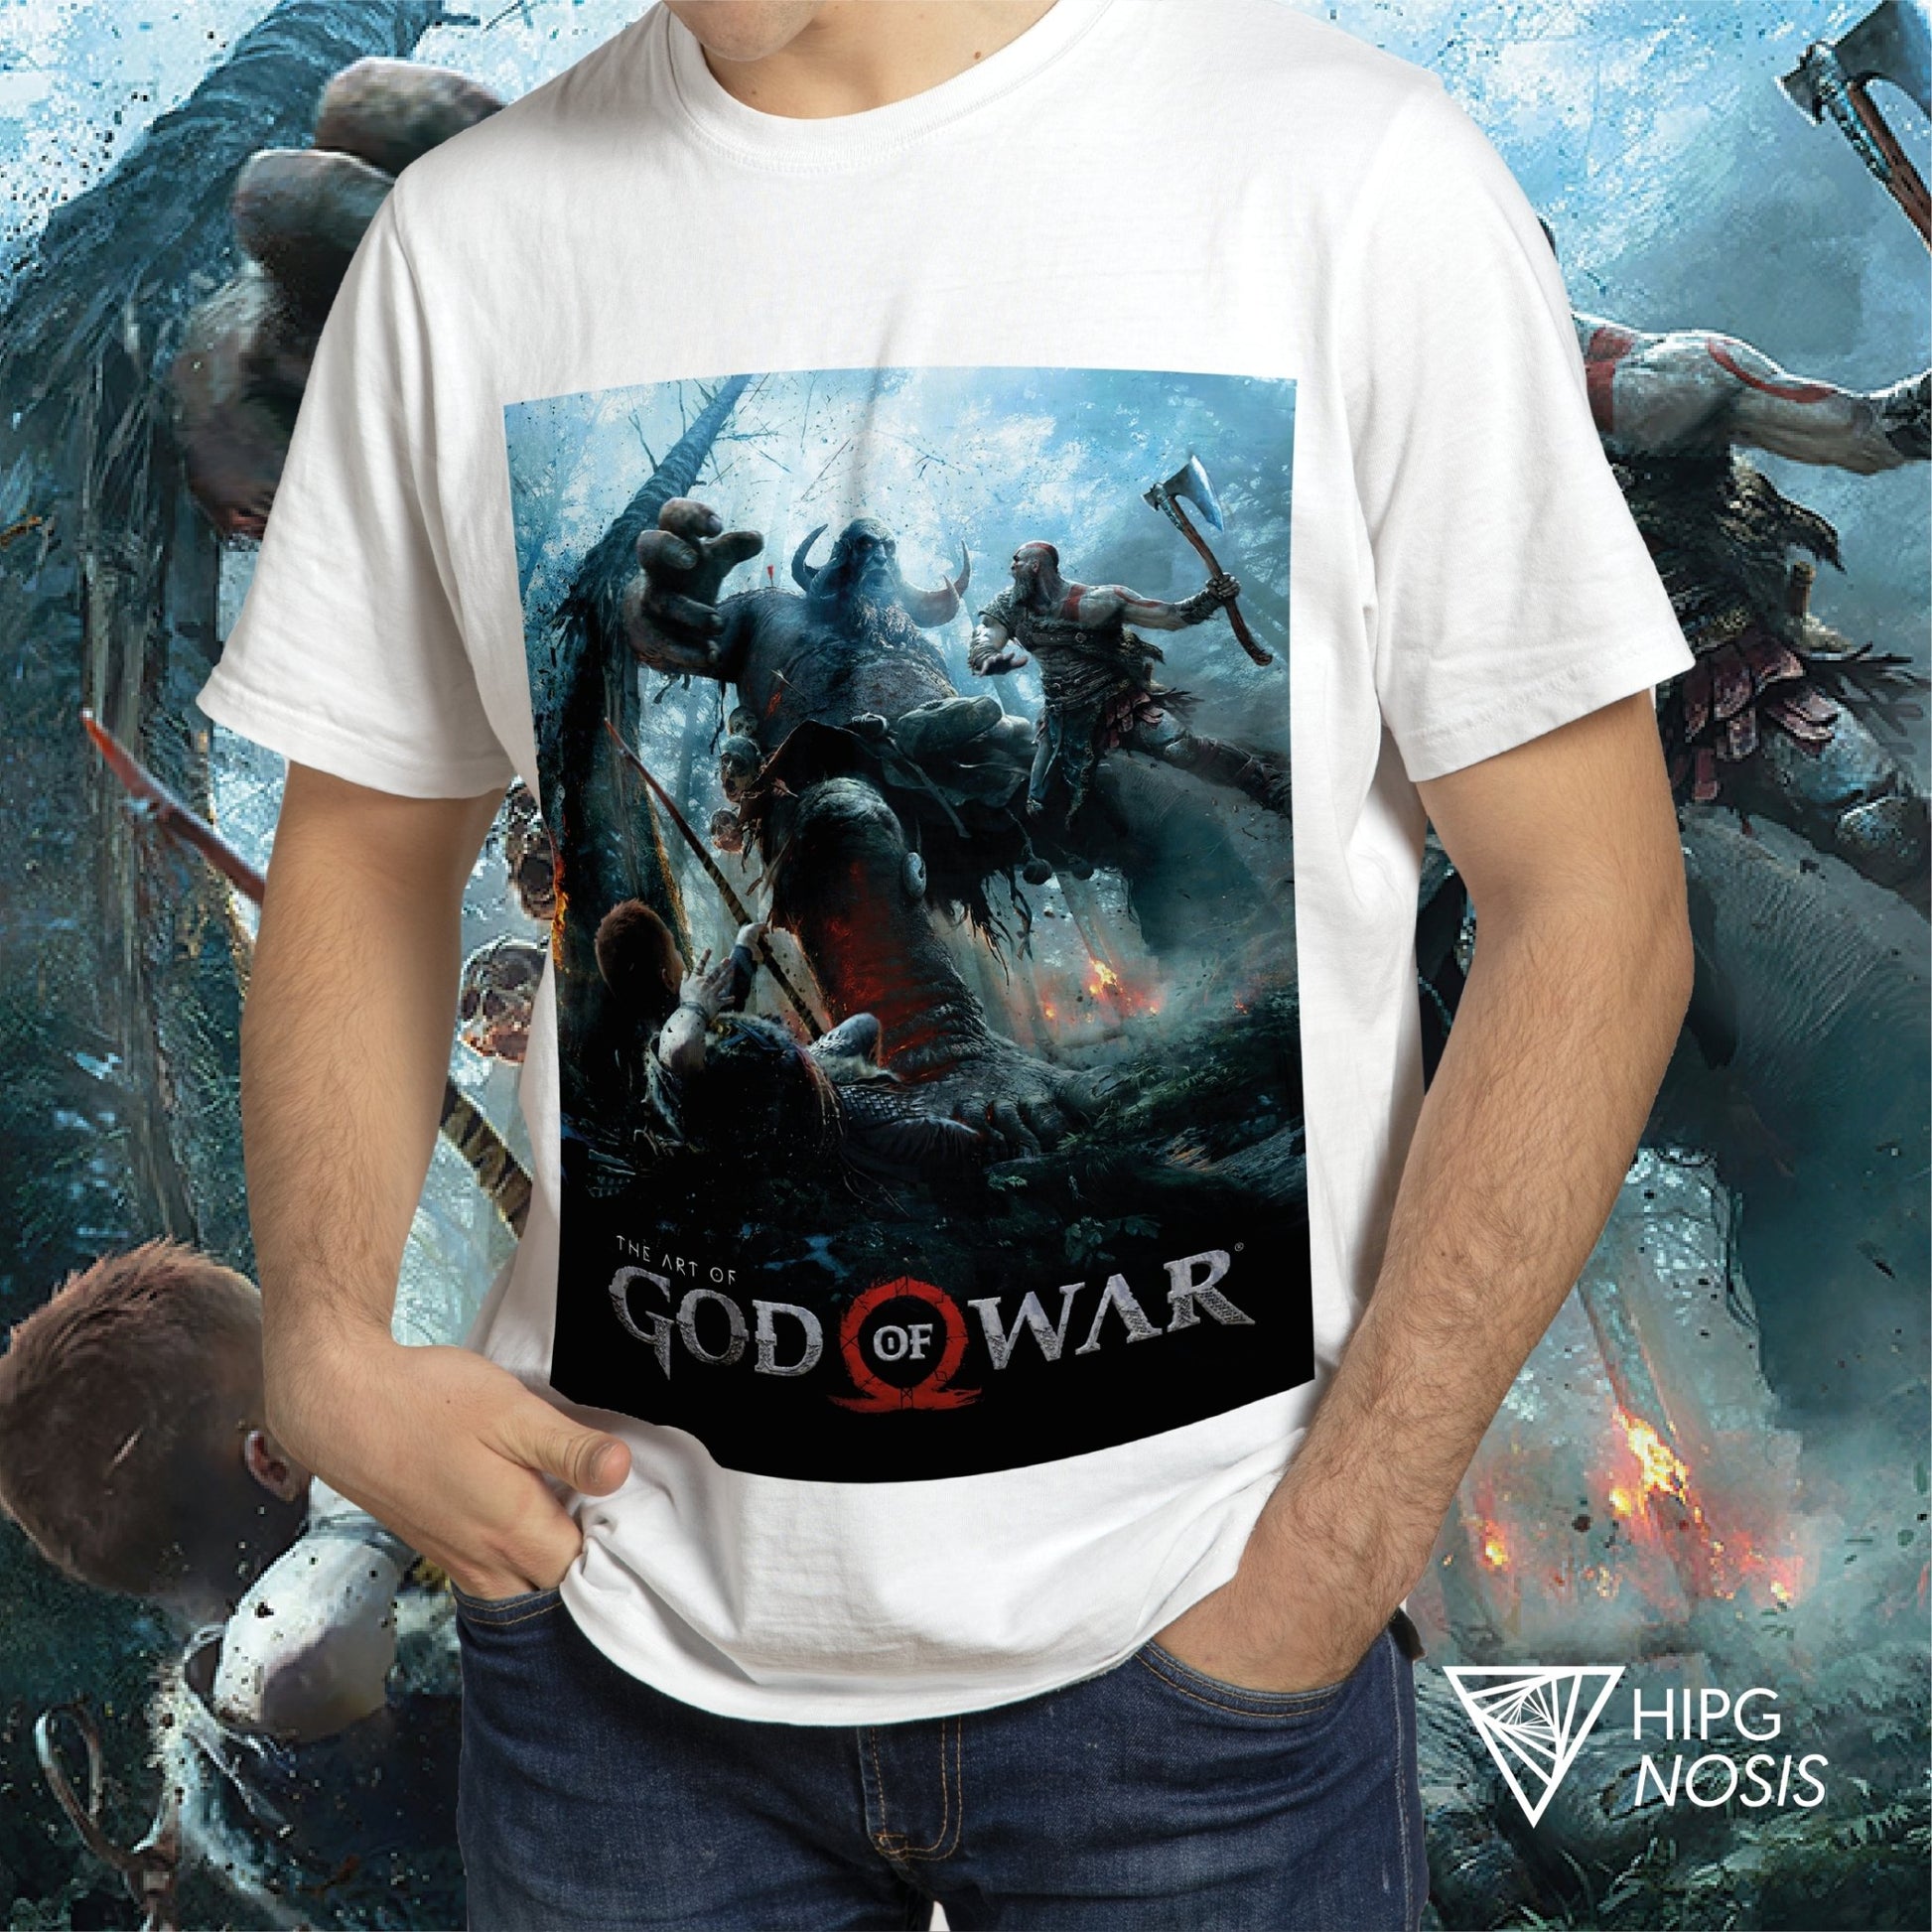 God of War 01 - Hipgnosis